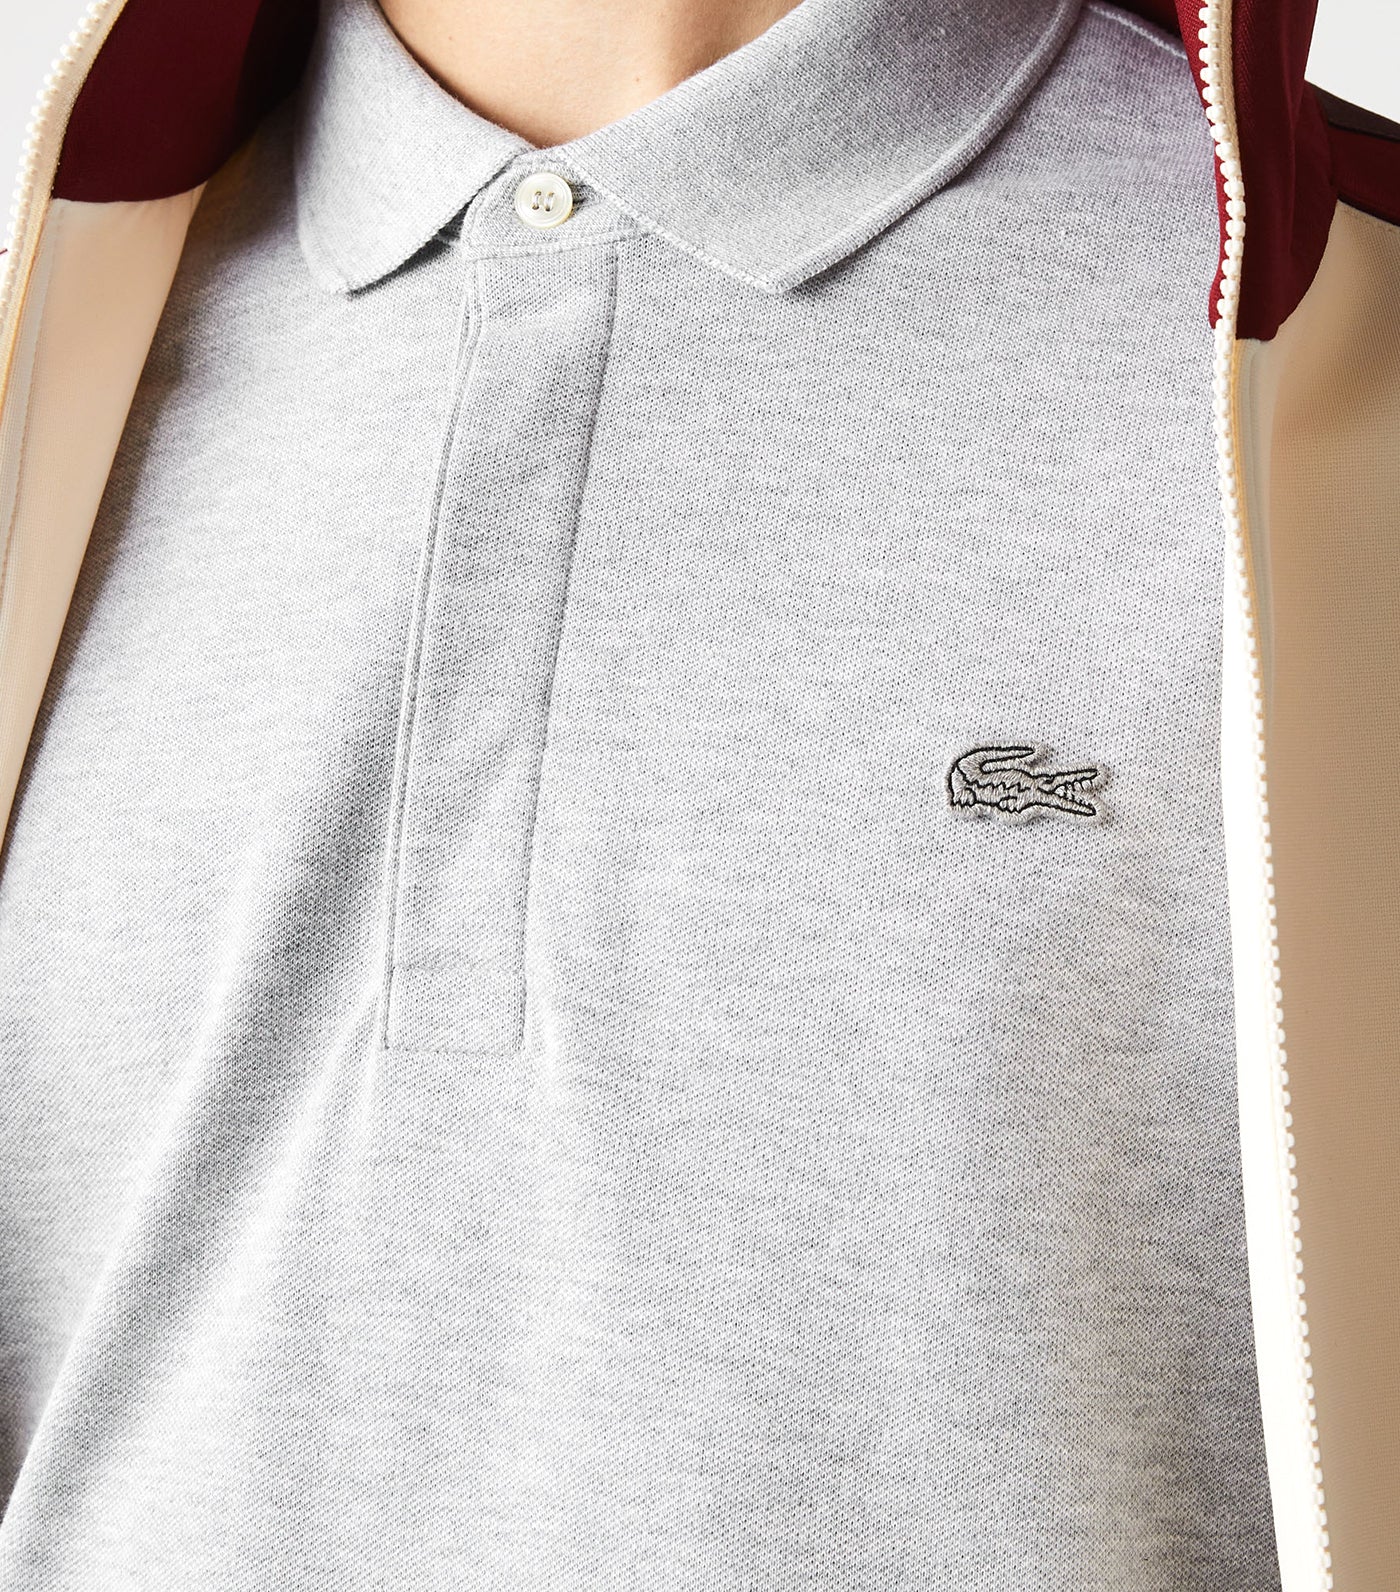 Men's Lacoste Paris Polo Shirt Regular Fit Stretch Cotton Piqué Silver Chine